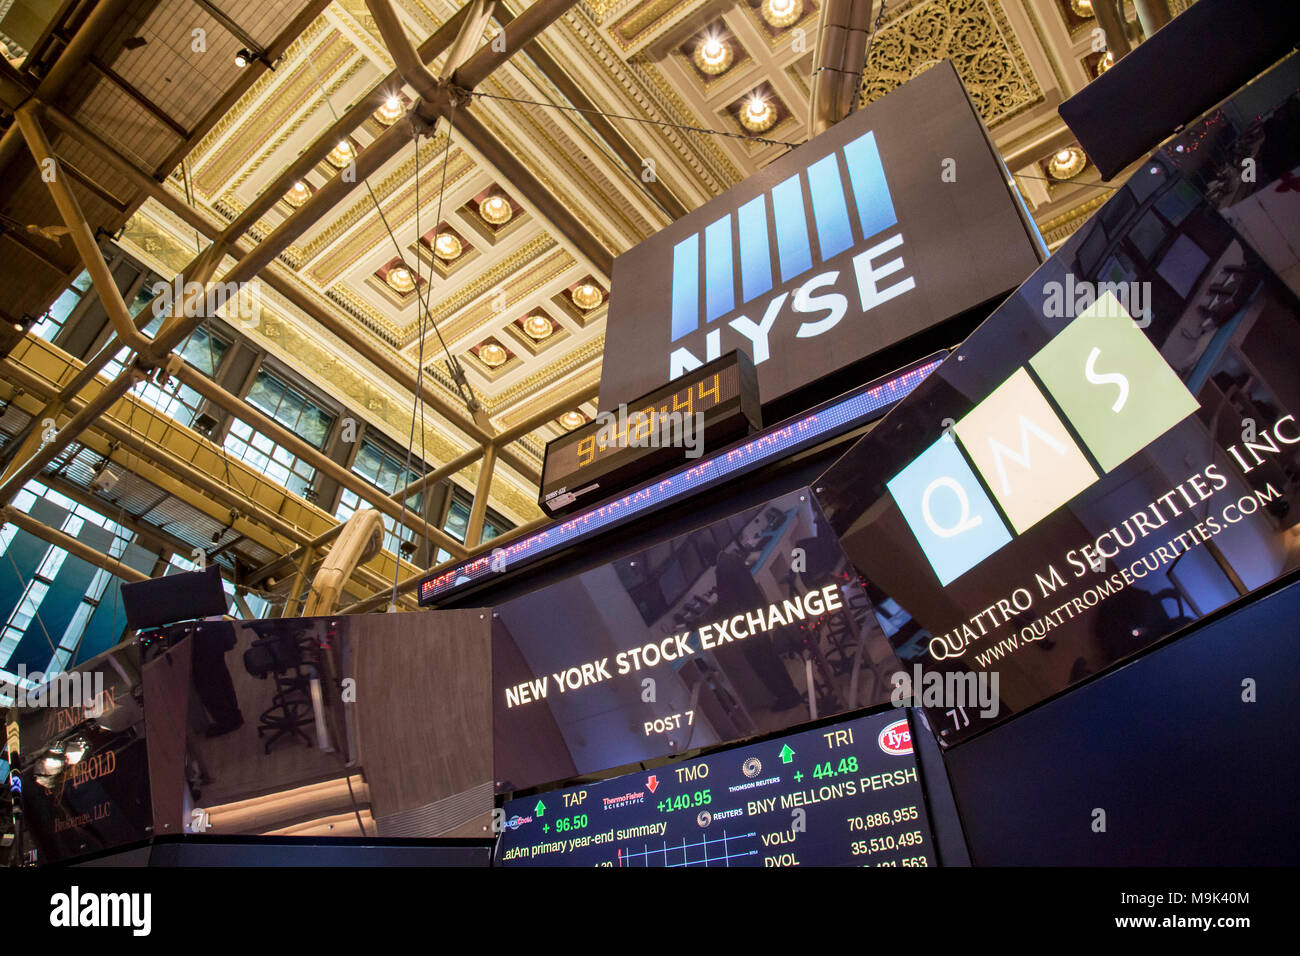 Screens overlooking the New York Stock Exchange trading floor. Stock Photo